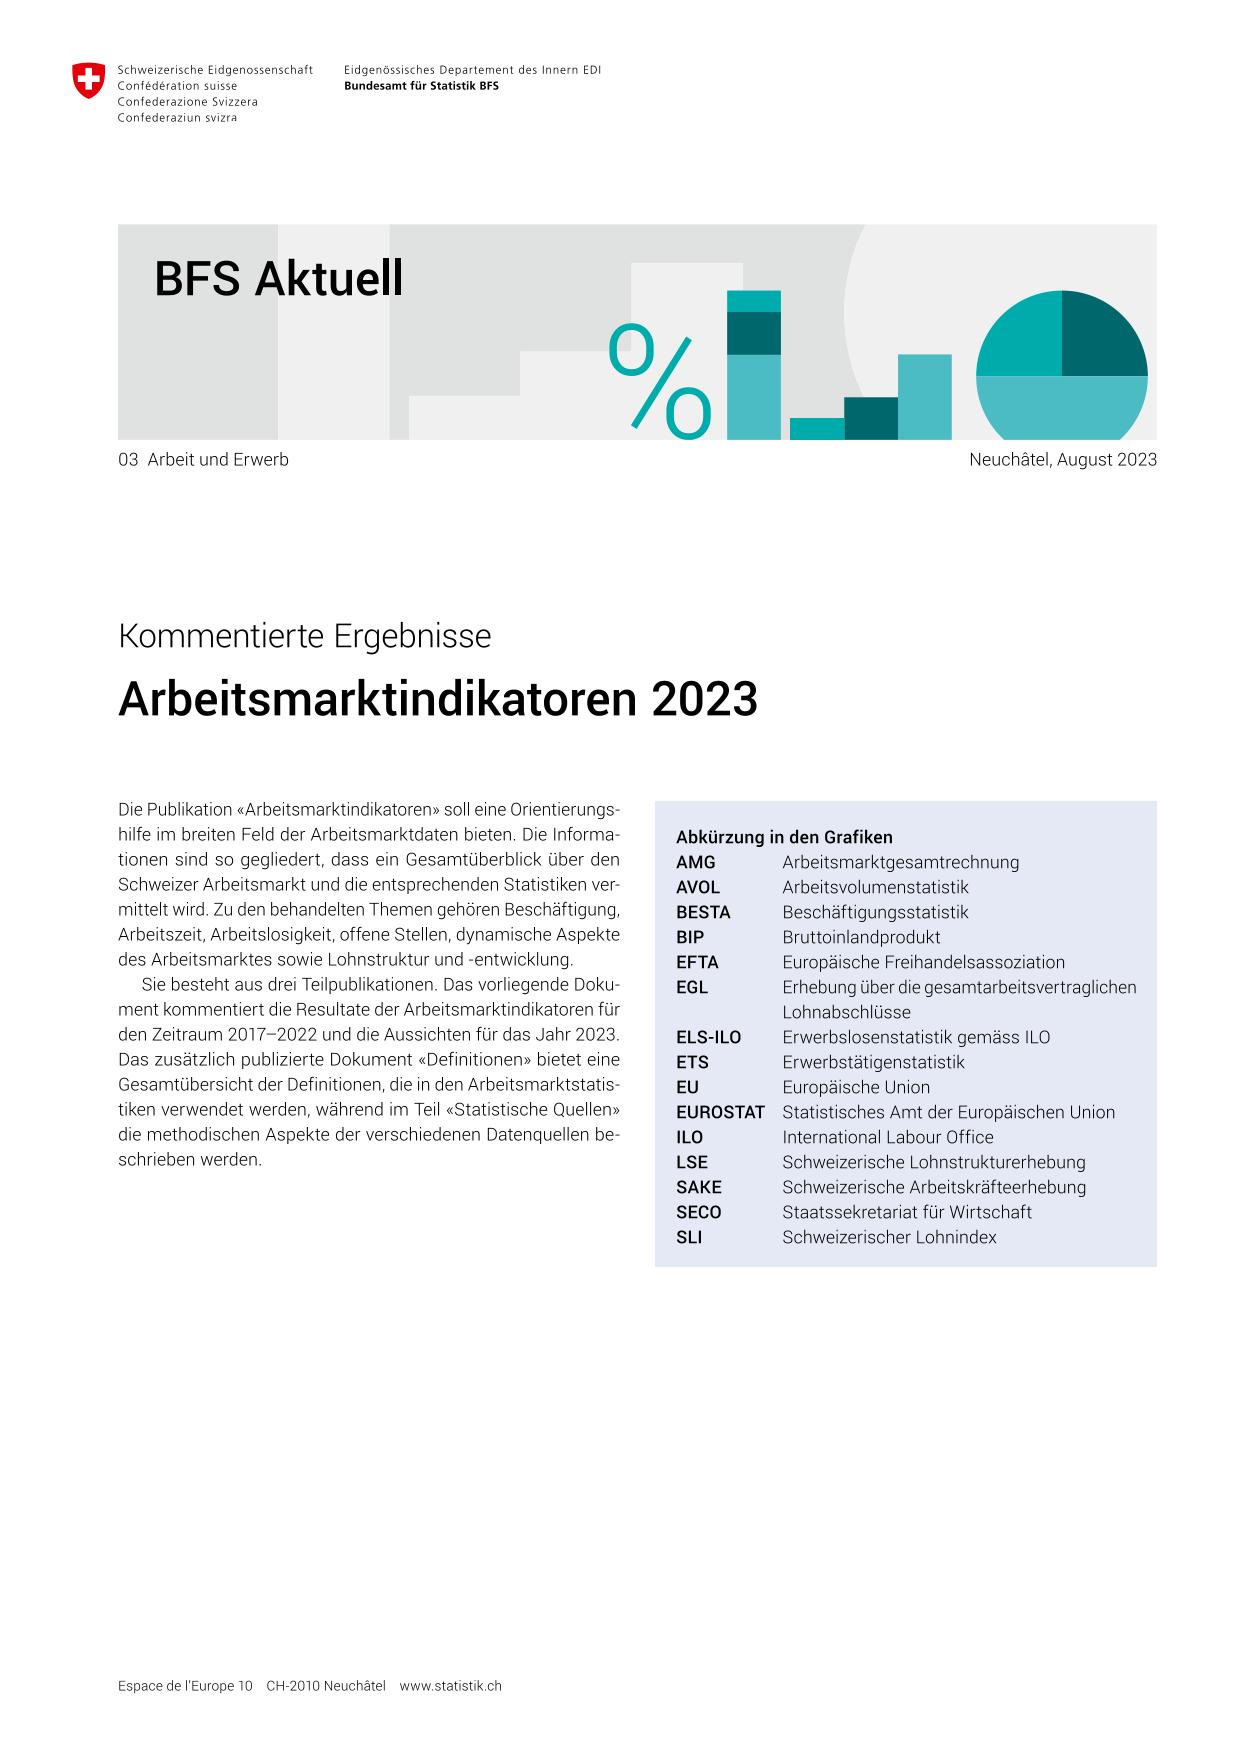 BFS Arbeitsmarktinidkatoren 2023